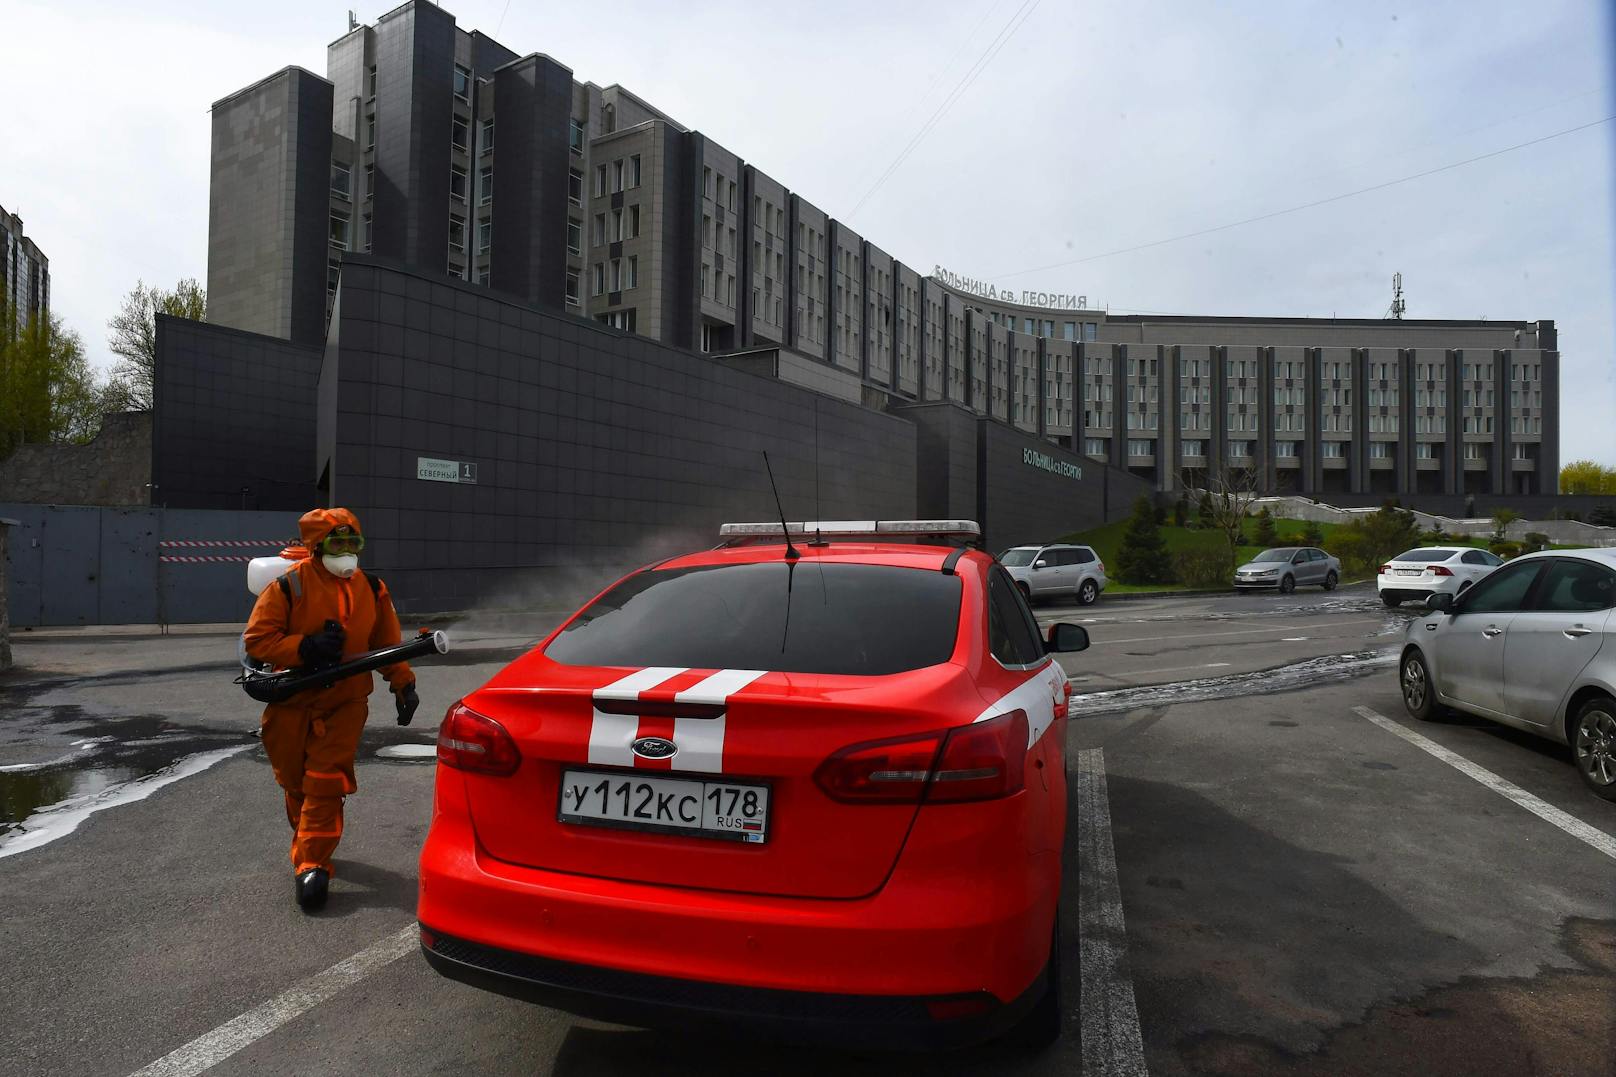 Fotos des Löscheinsatzes bei einem tödlichen Brand auf der Intensivstation eines Krankenhauses in St. Petersburg, Russland, am 12. Mai 2020